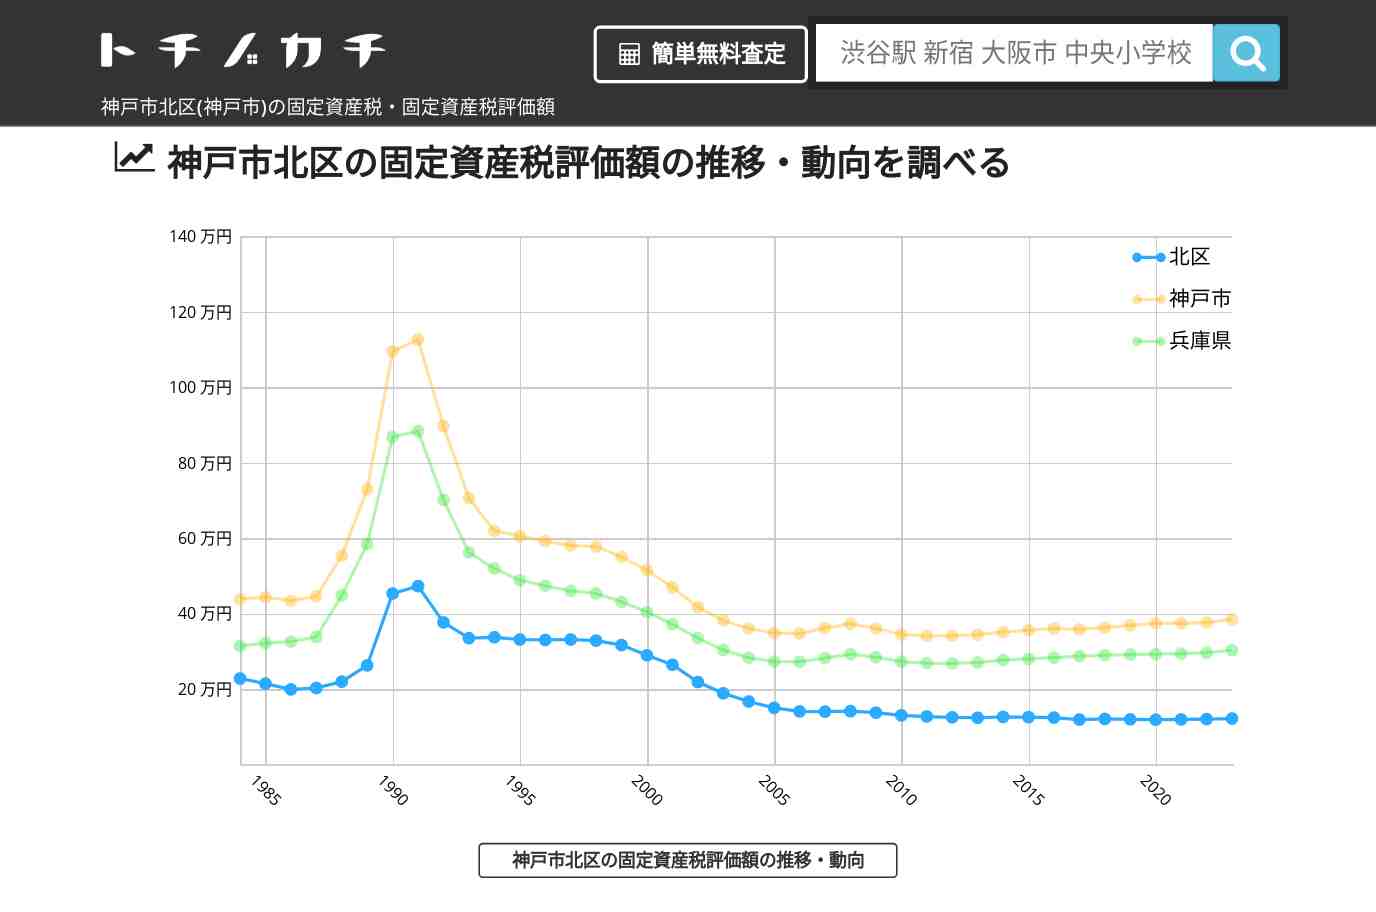 甲緑小学校(兵庫県 神戸市 北区)周辺の固定資産税・固定資産税評価額 | トチノカチ